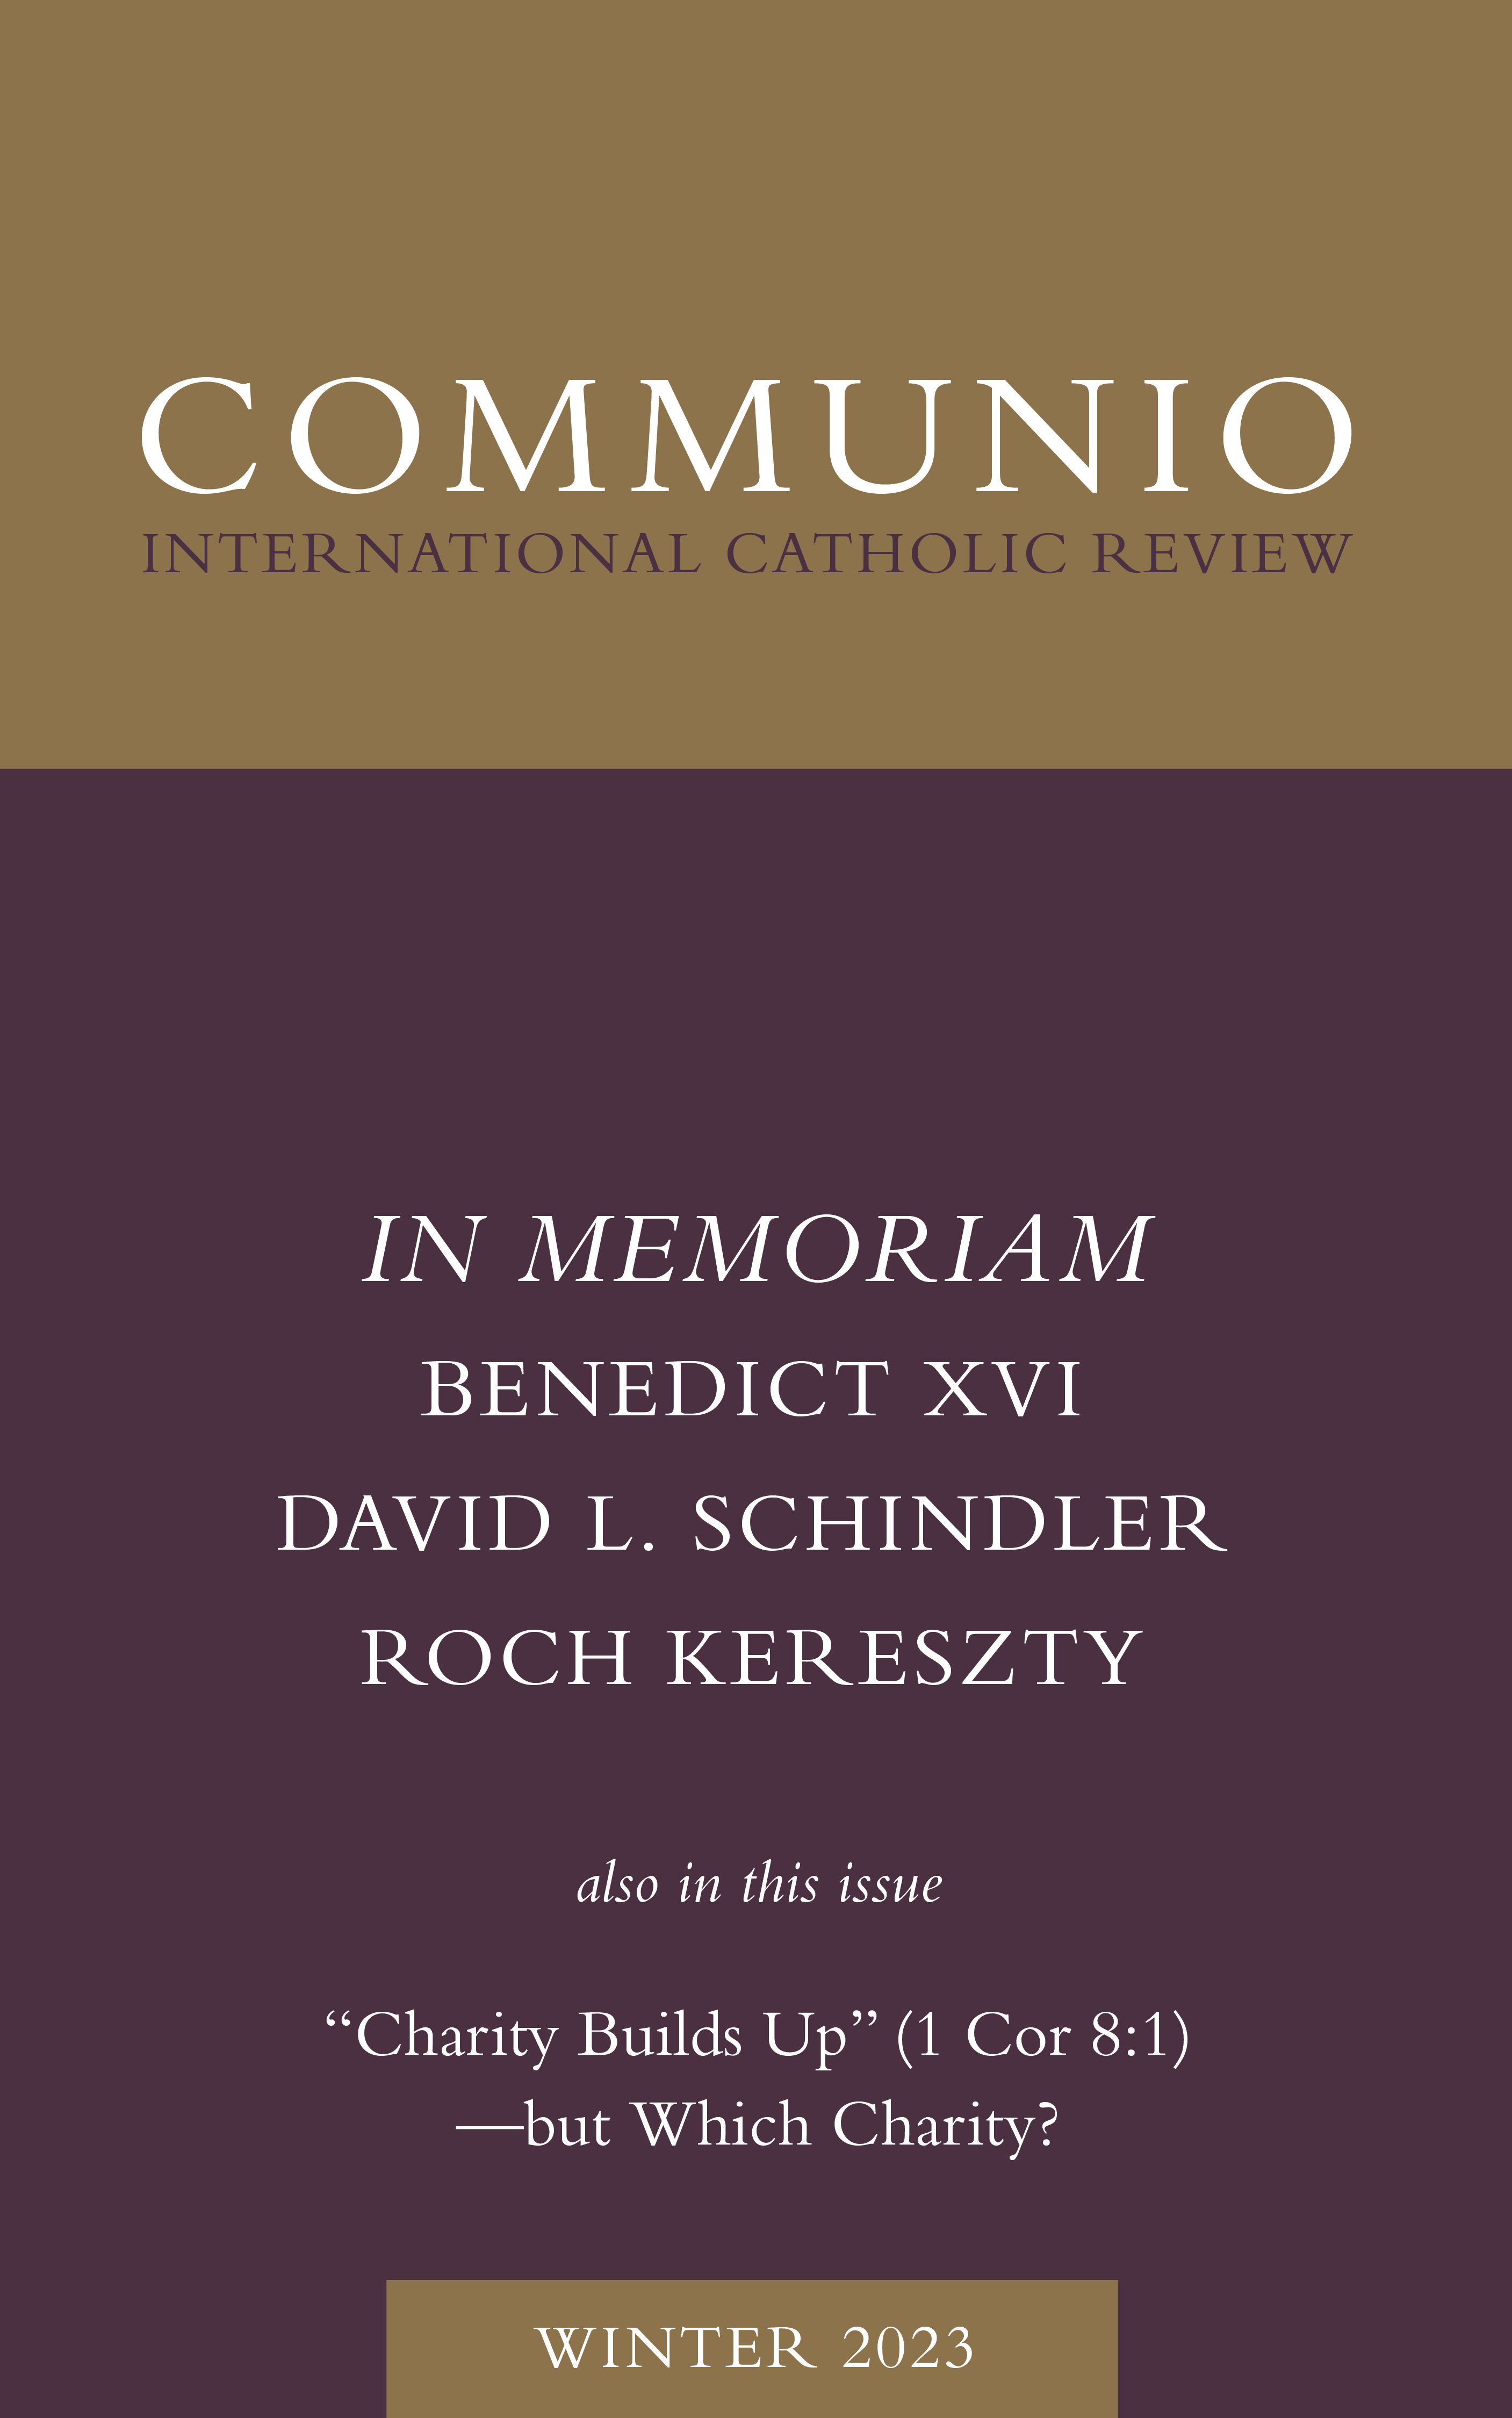 Communio - Winter 2023 - In Memoriam: David L. Schindler, Benedict XVI, Roch Kereszty